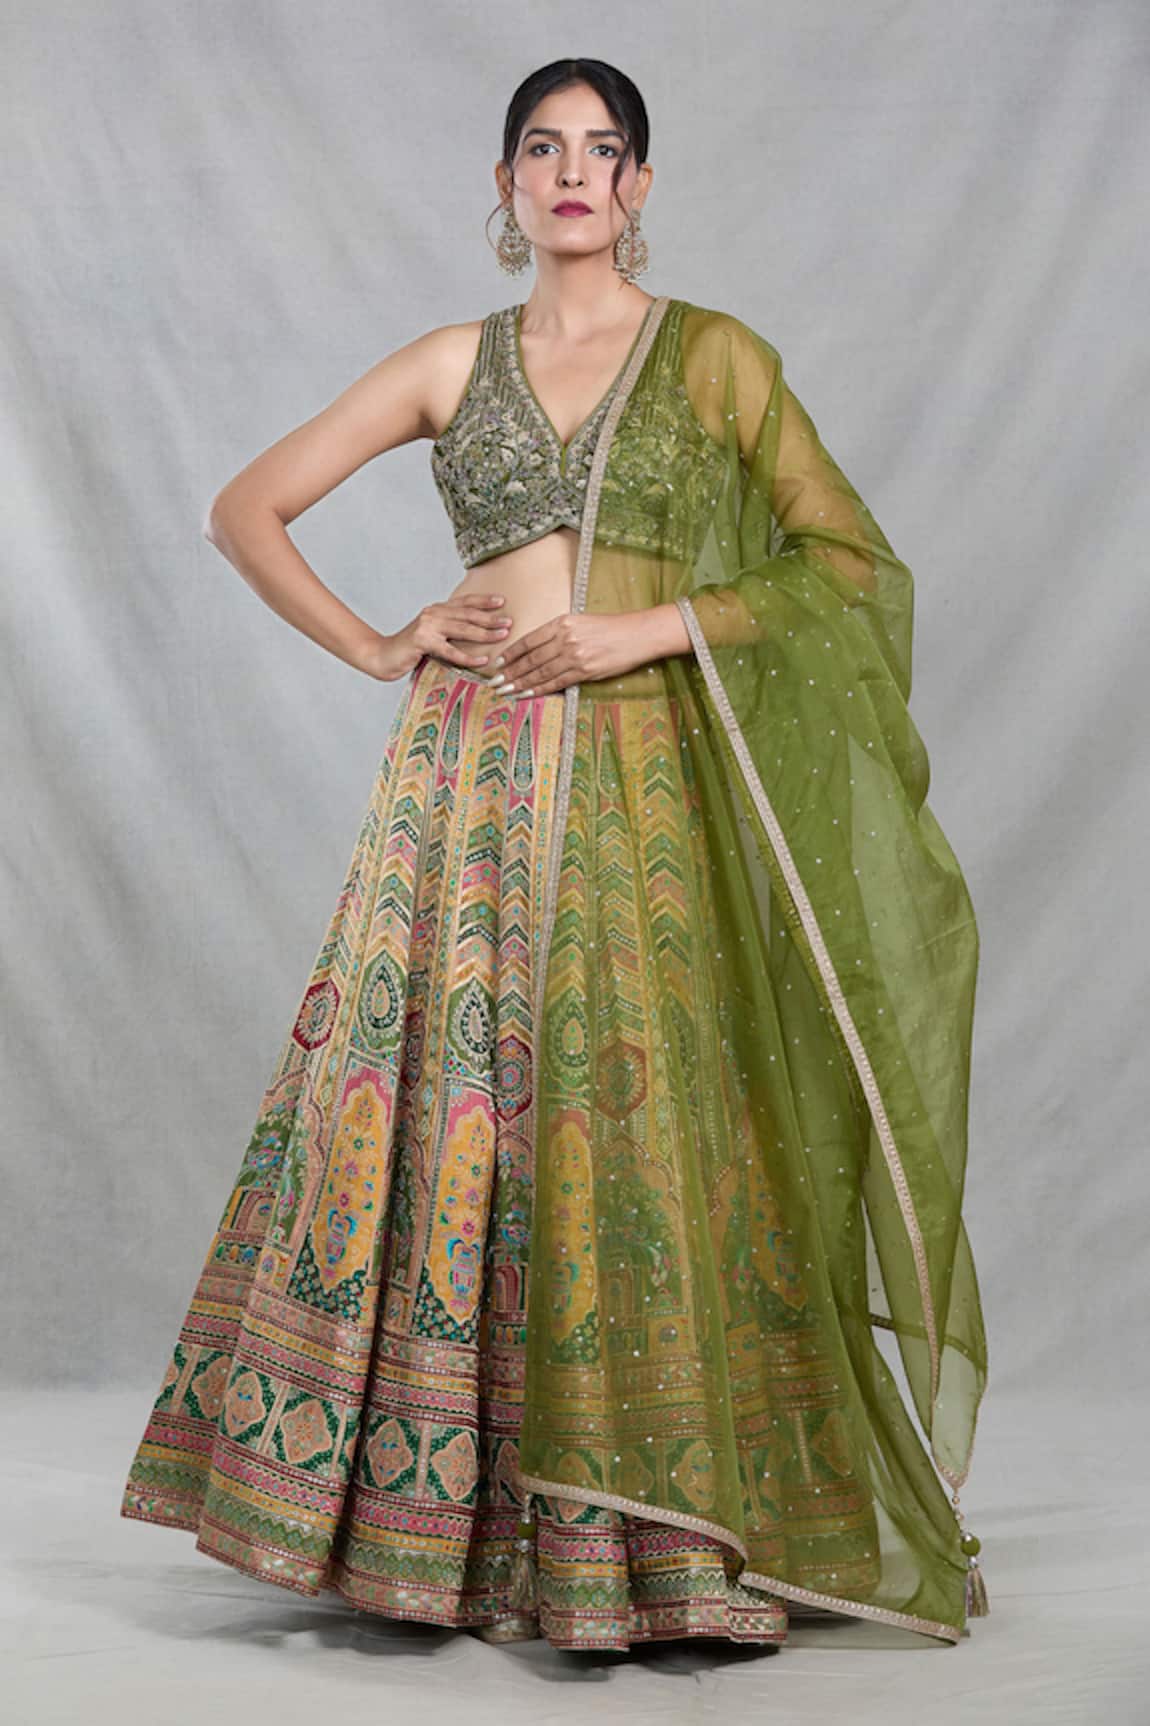 Samyukta Singhania Royal Mahal Banarasi Silk Lehenga Set